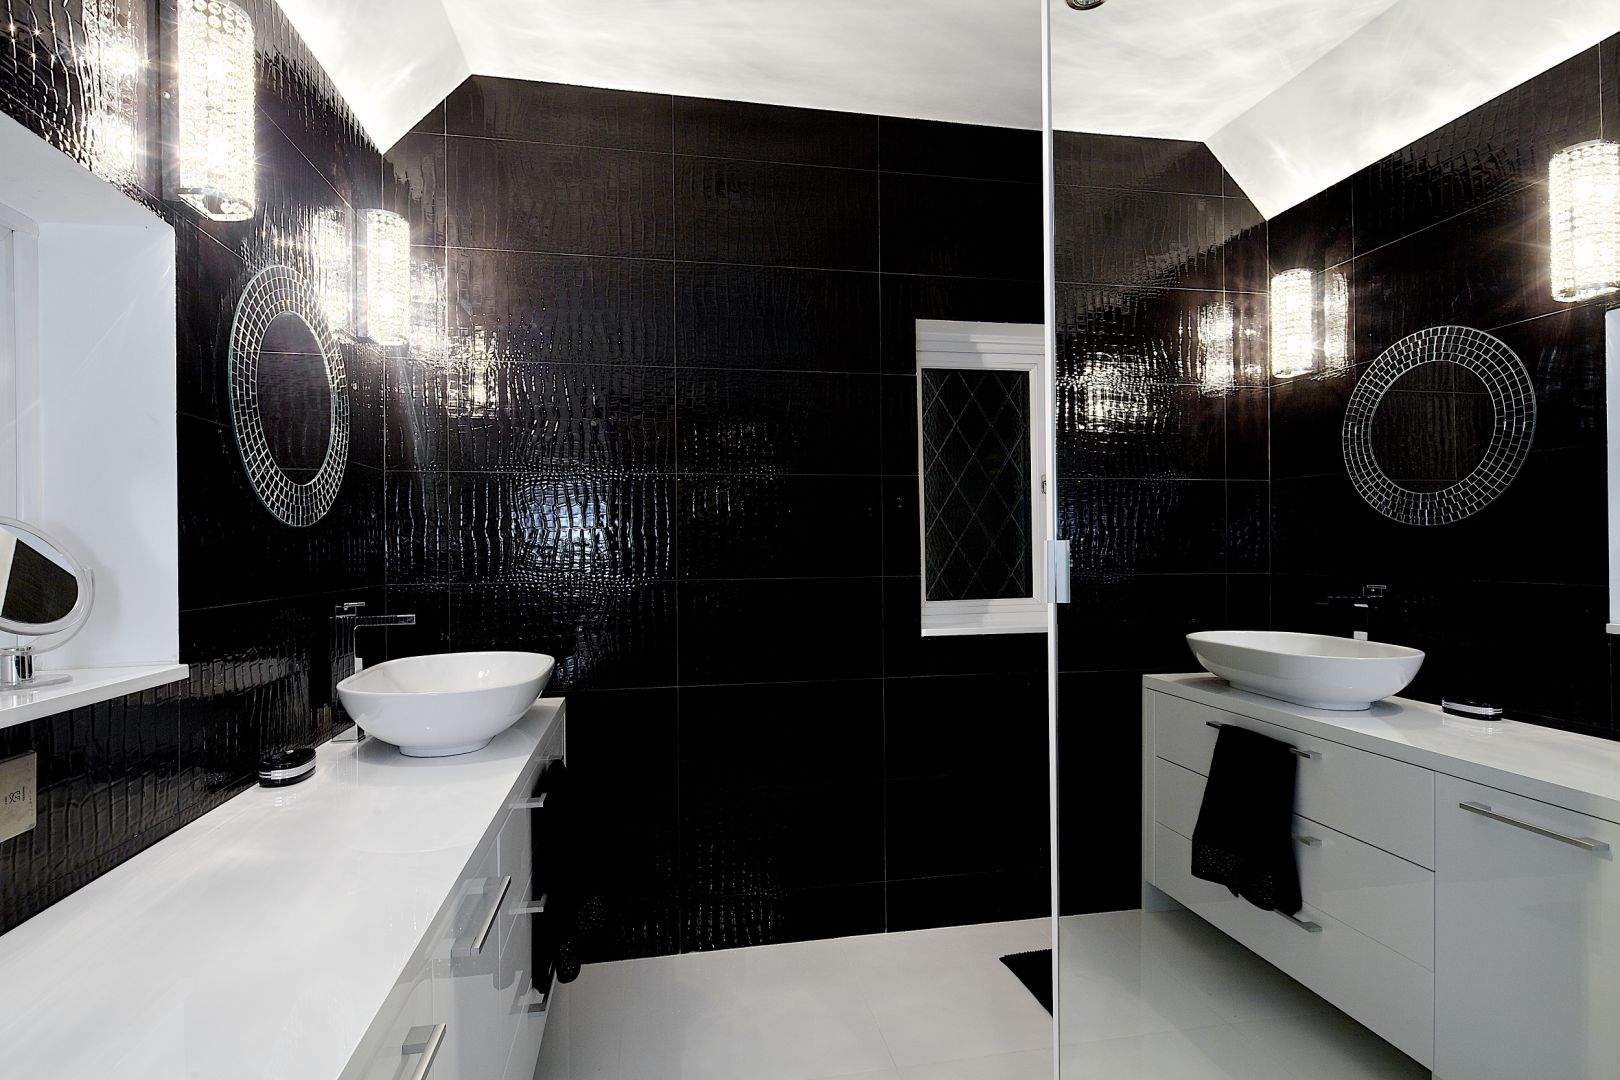 Ogromne lustro na ścianie dwukrotnie powiększa łazienkę. Czarne płytki to stylizacja skóry krokodyla. Fot. Michał Jessa